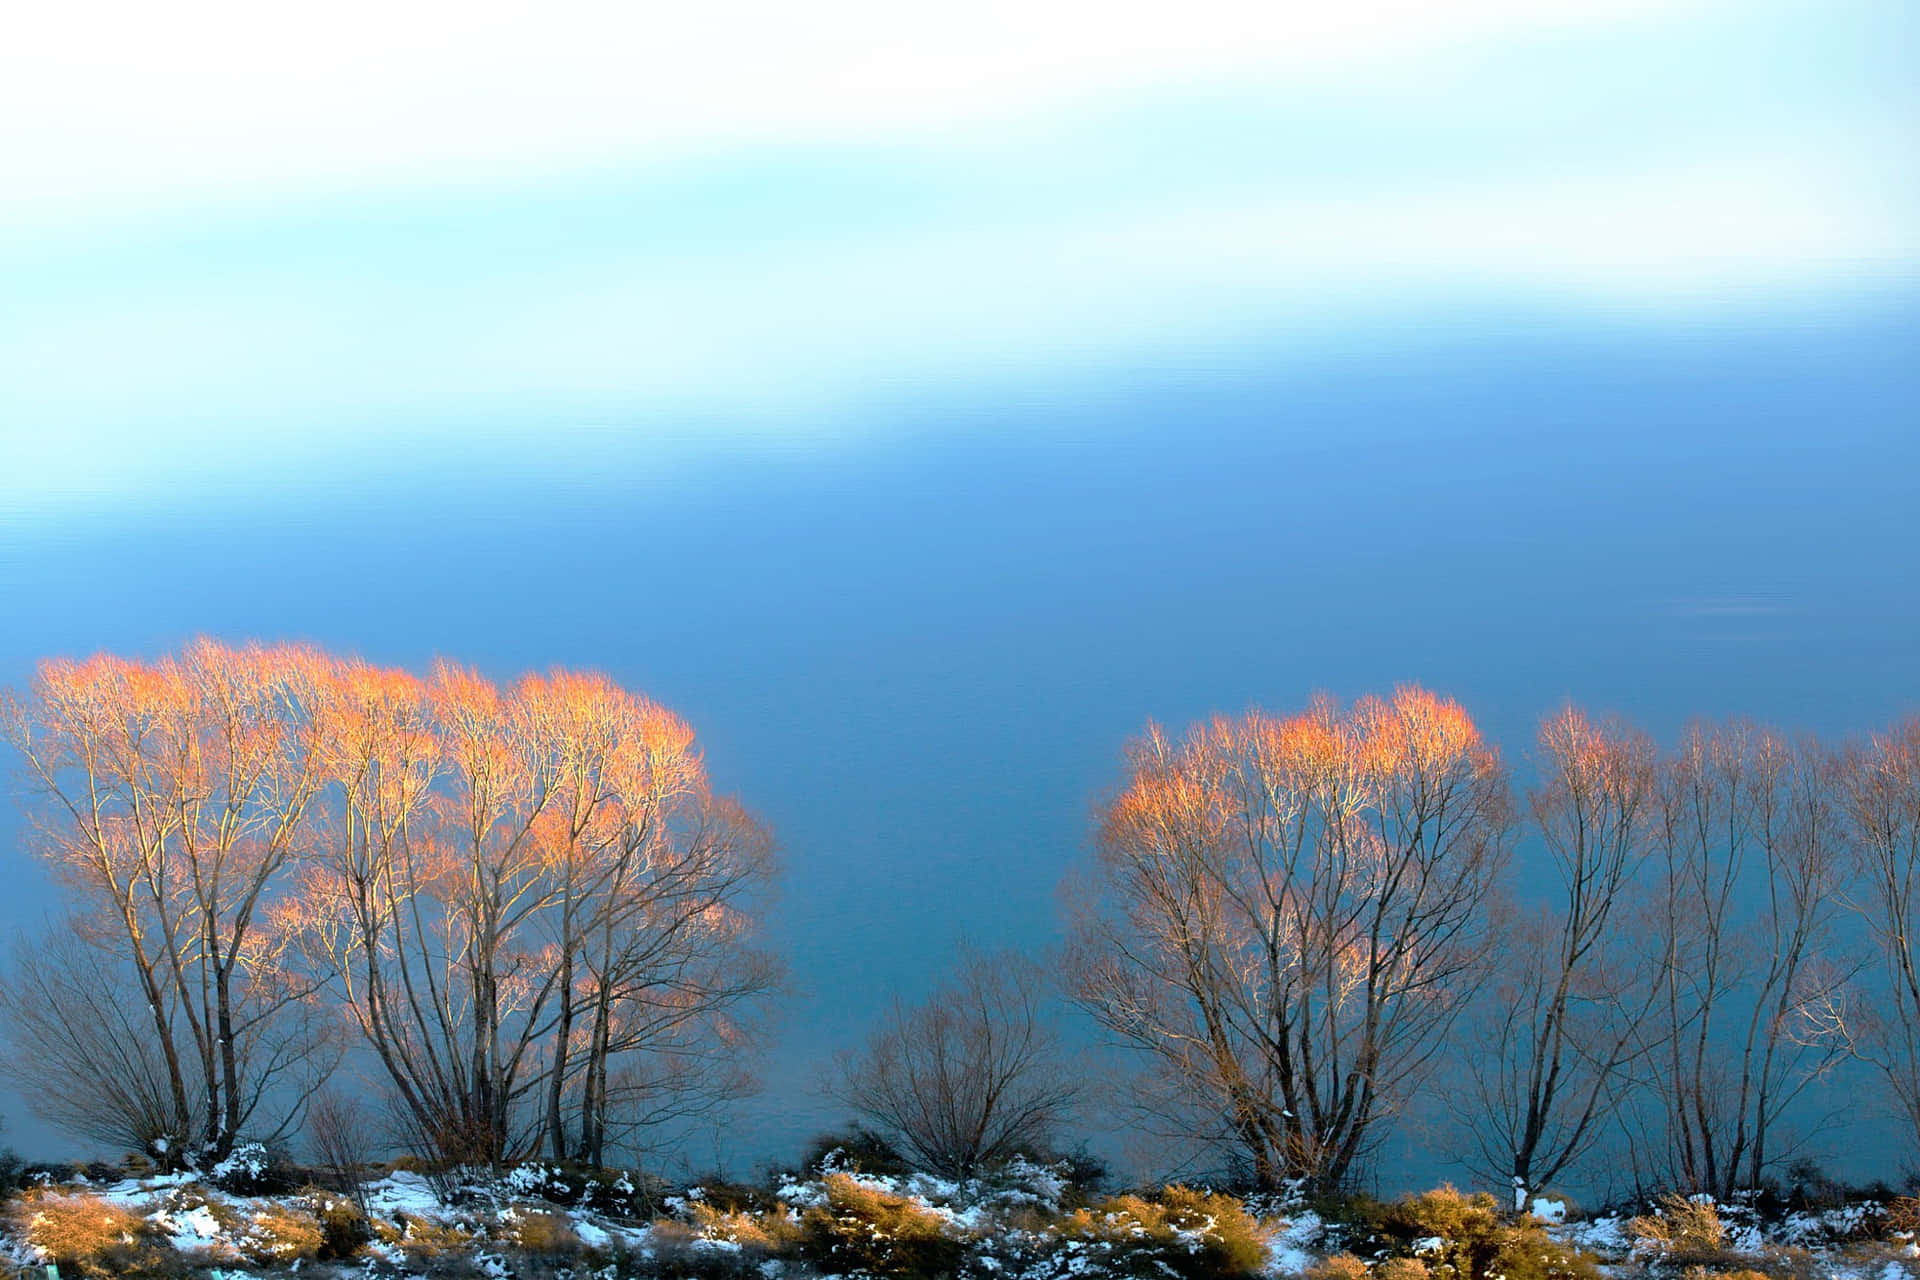 Fotovon Einem Ruhigen, Friedlichen See, Umgeben Von Üppig Grünen Bäumen Mitten In Der Natur